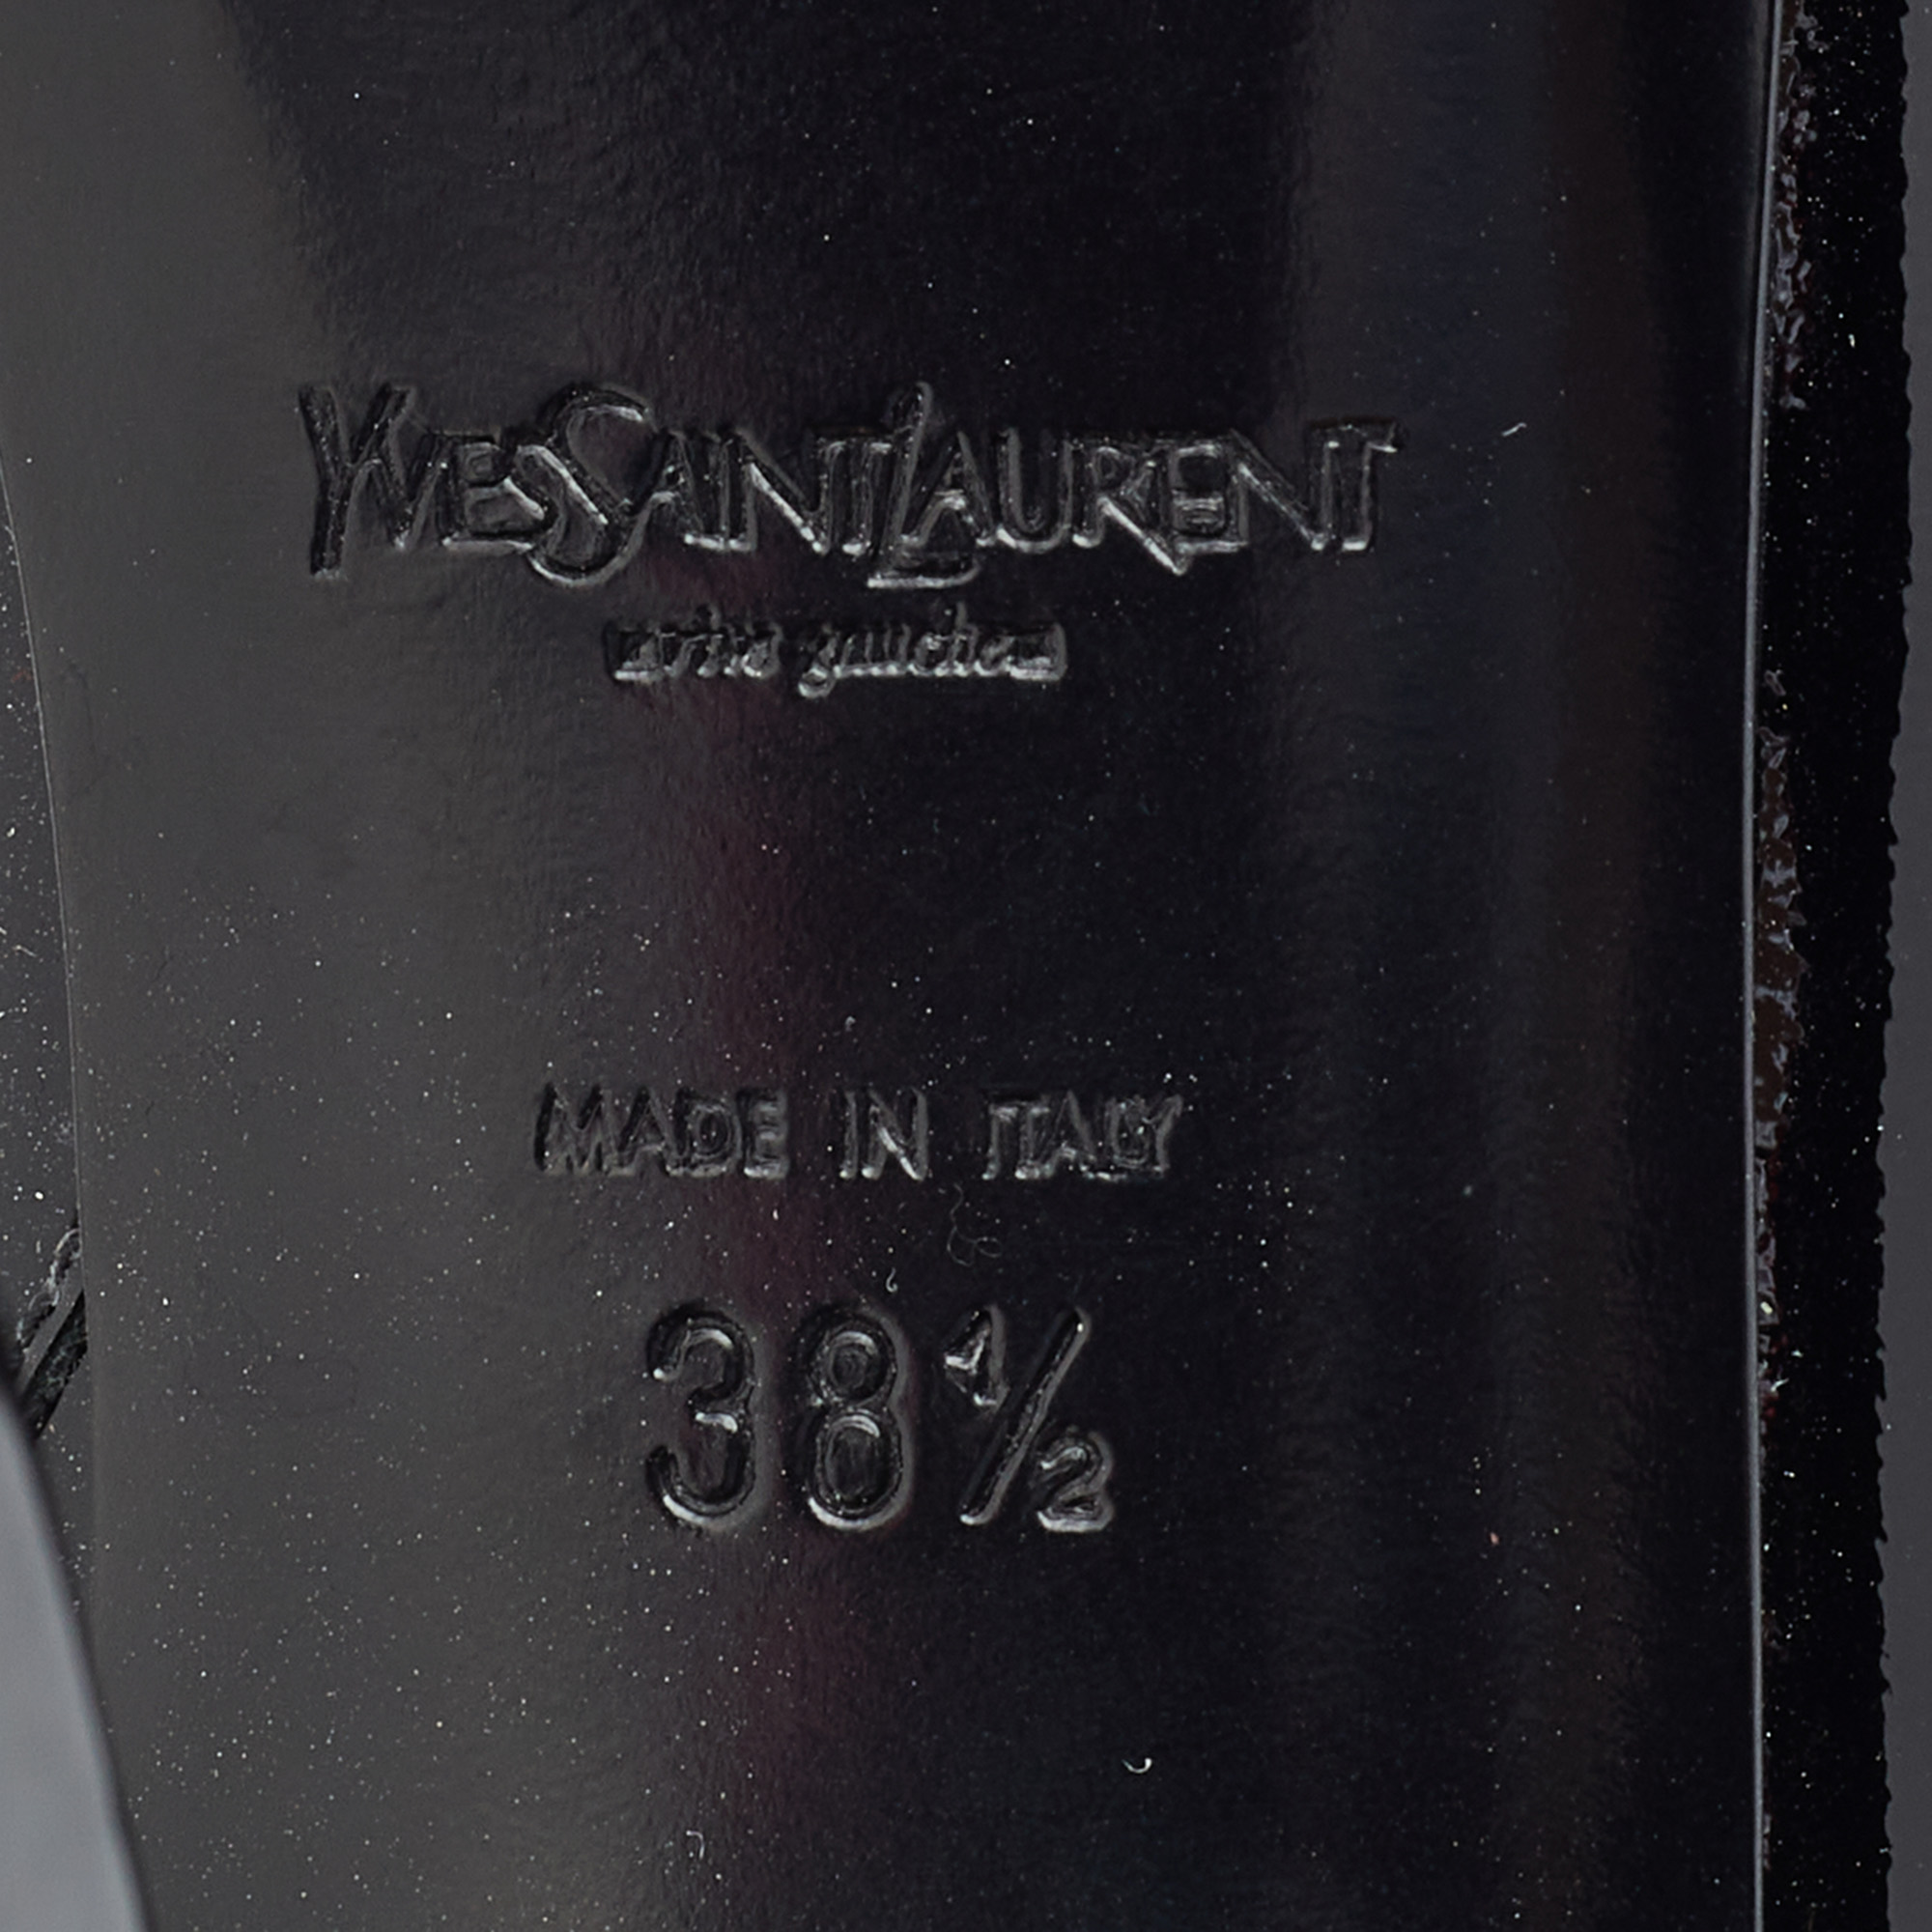 Yves Saint Laurent Black Patent Leather Platform Booties Size 38.5